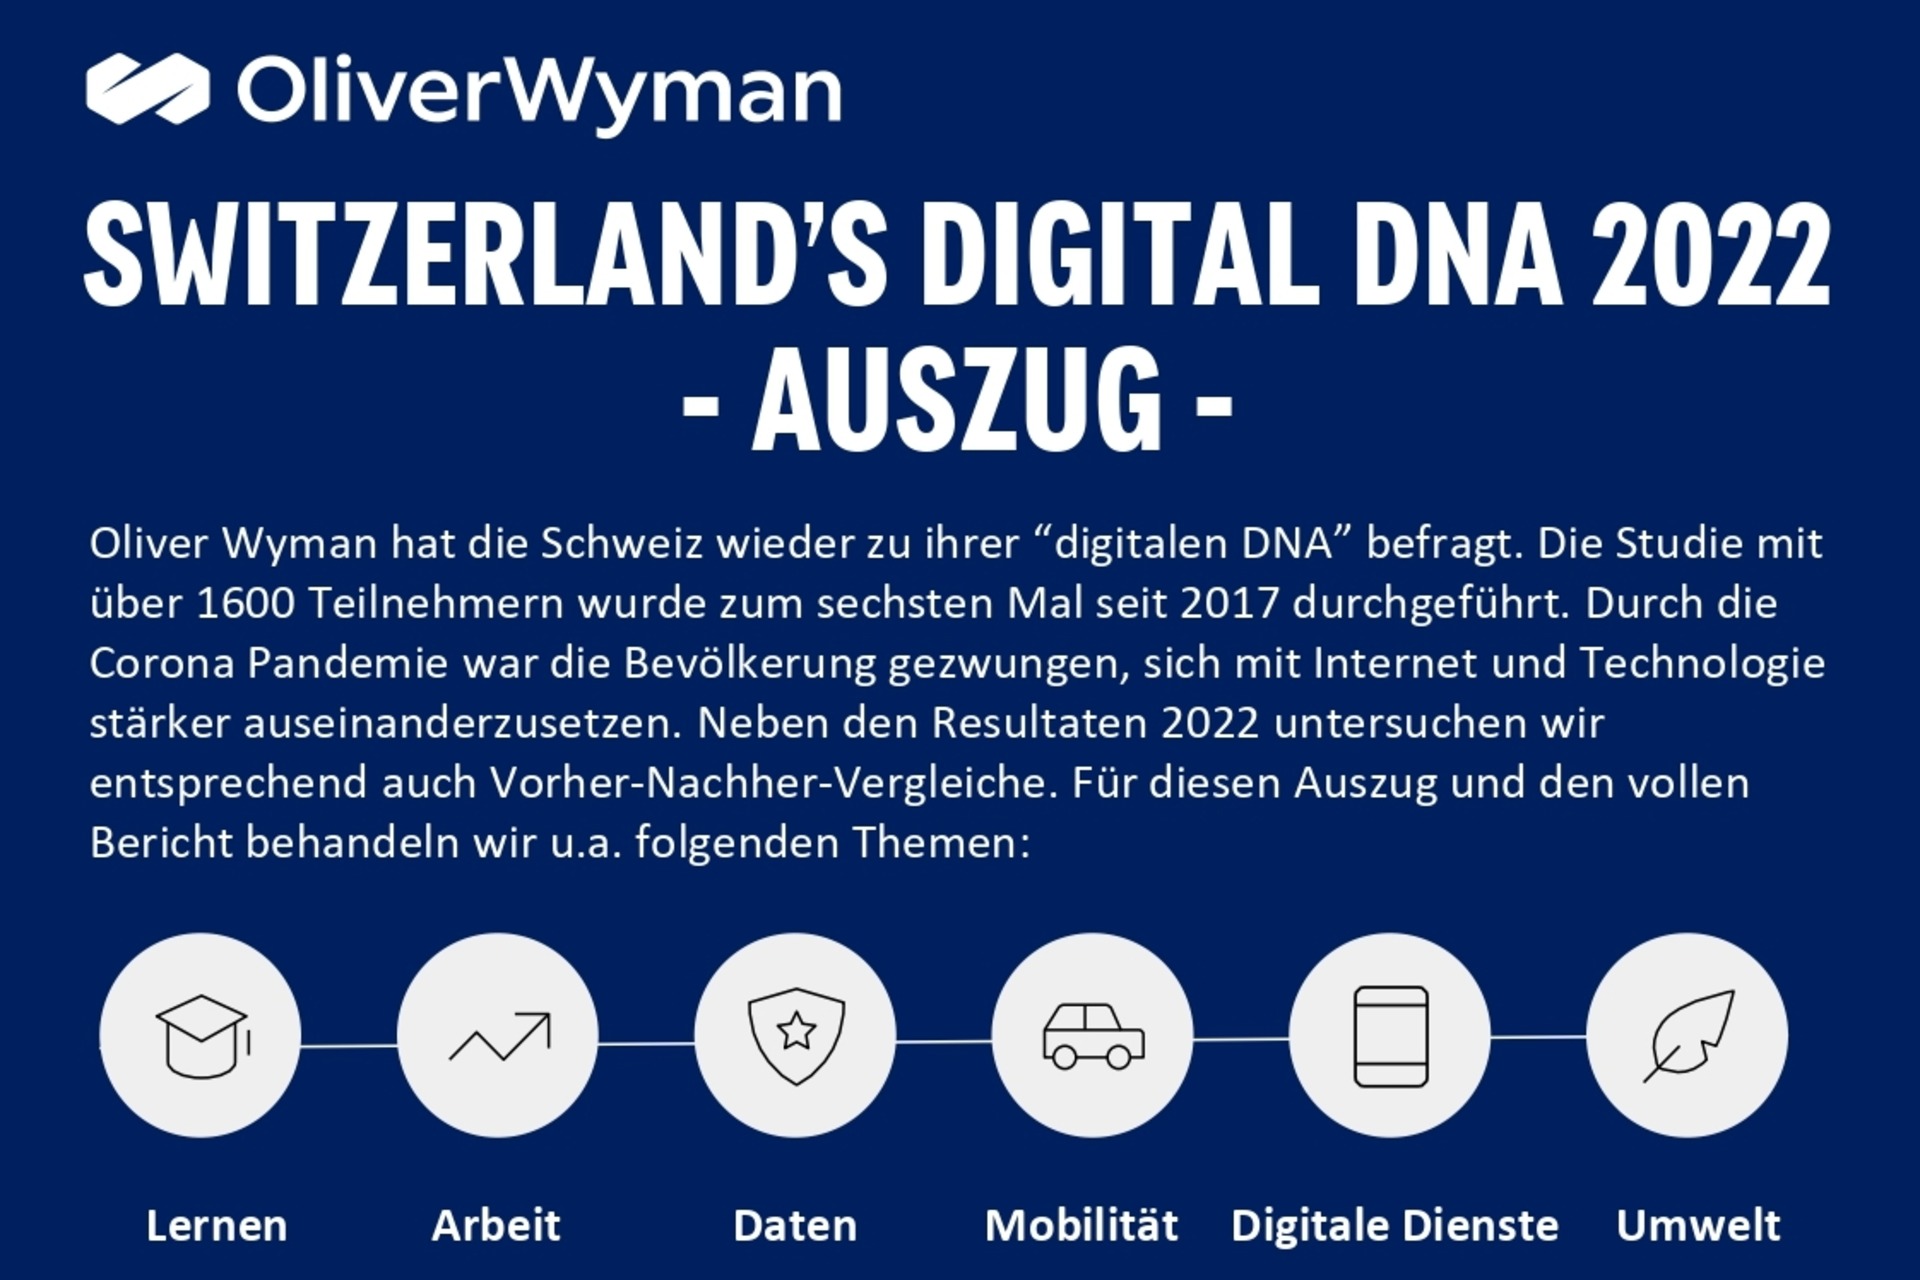 Oliverio Wymano ir skaitmeninės šveicarijos „Switzerlands Digital DNA“ tyrimo infografikos pirmojo puslapio viršuje.